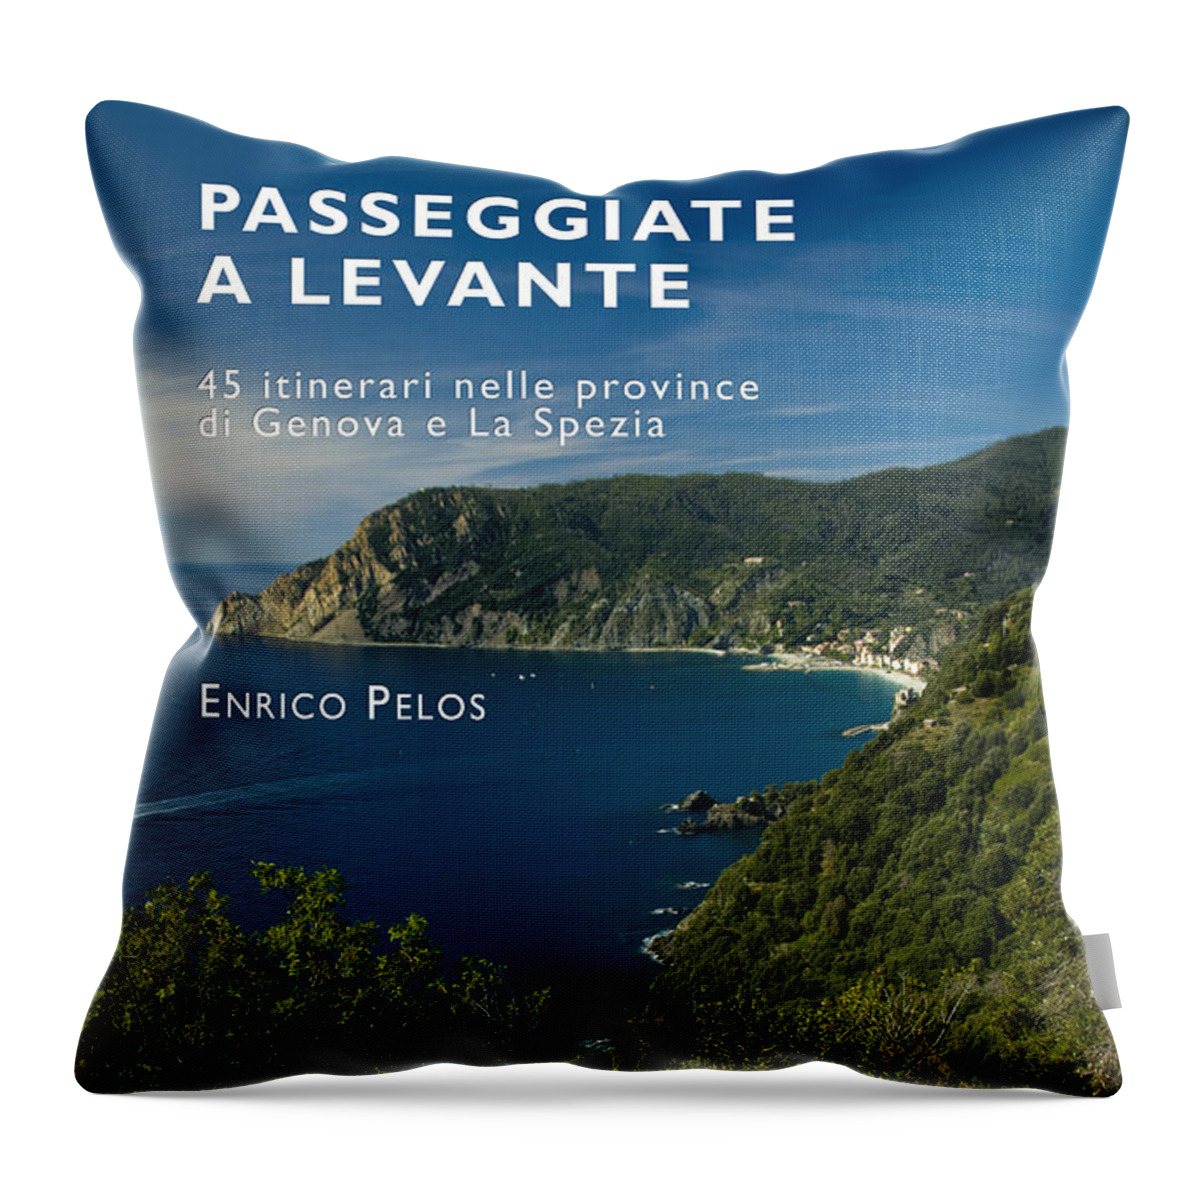 Passeggiate A Levante Throw Pillow featuring the photograph PASSEGGIATE A LEVANTE - THE BOOK by Enrico Pelos by Enrico Pelos